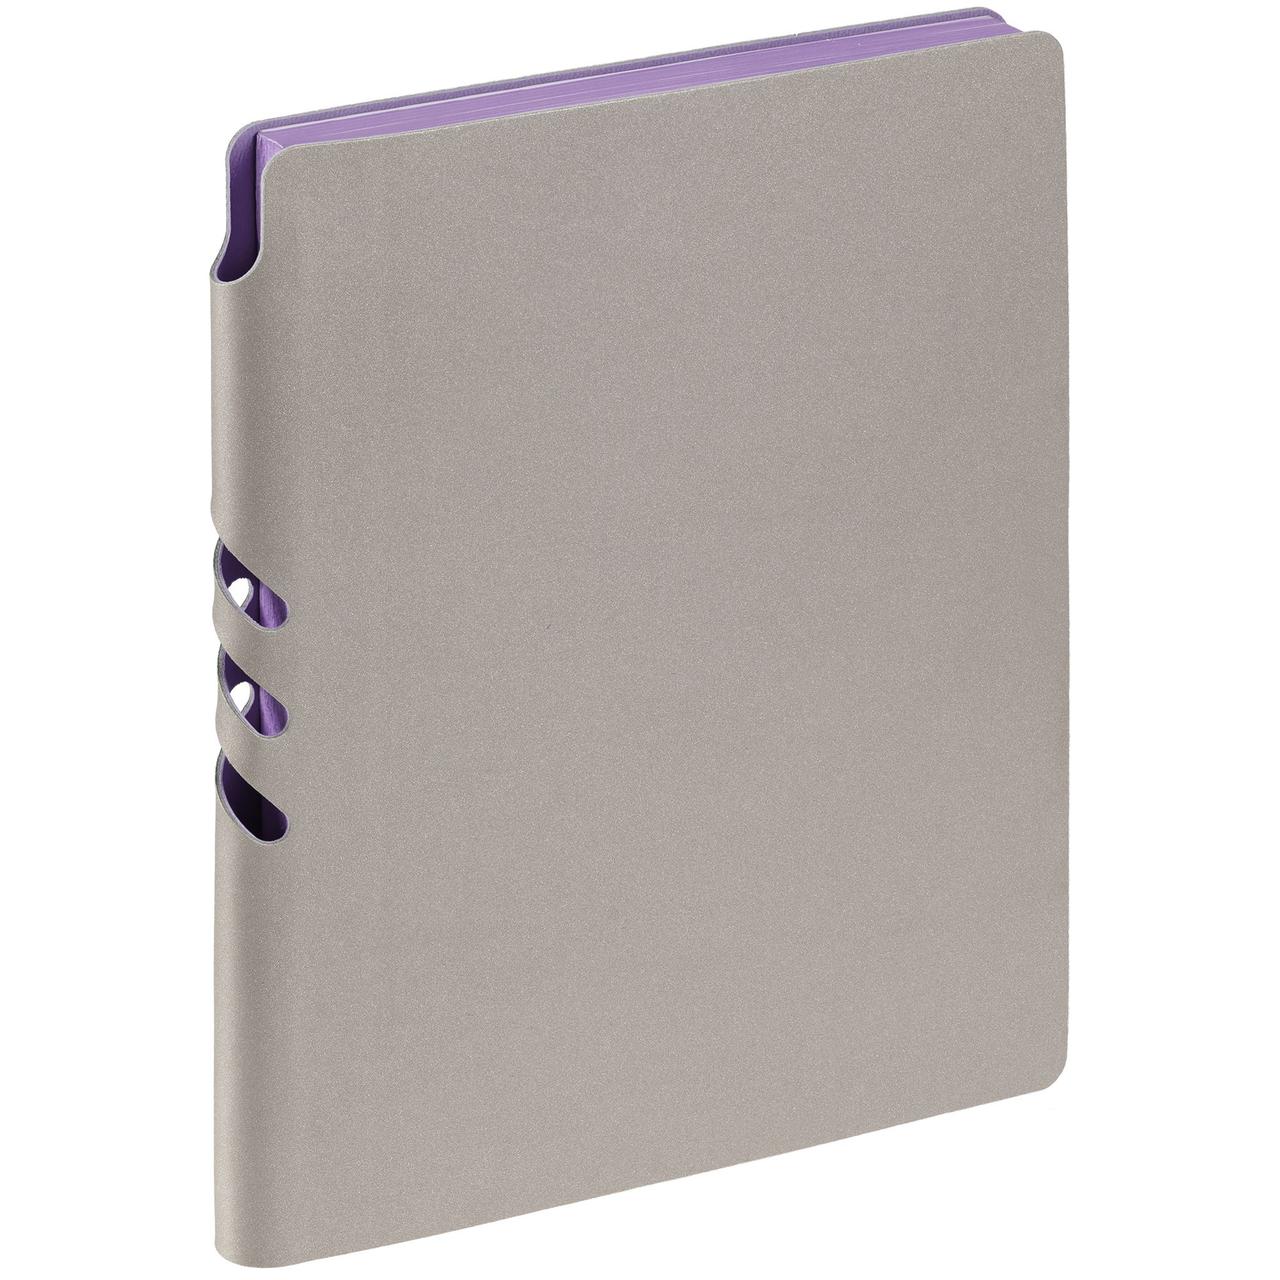 Ежедневник Flexpen, недатированный, серебристо-фиолетовый (артикул 11087.17), фото 1